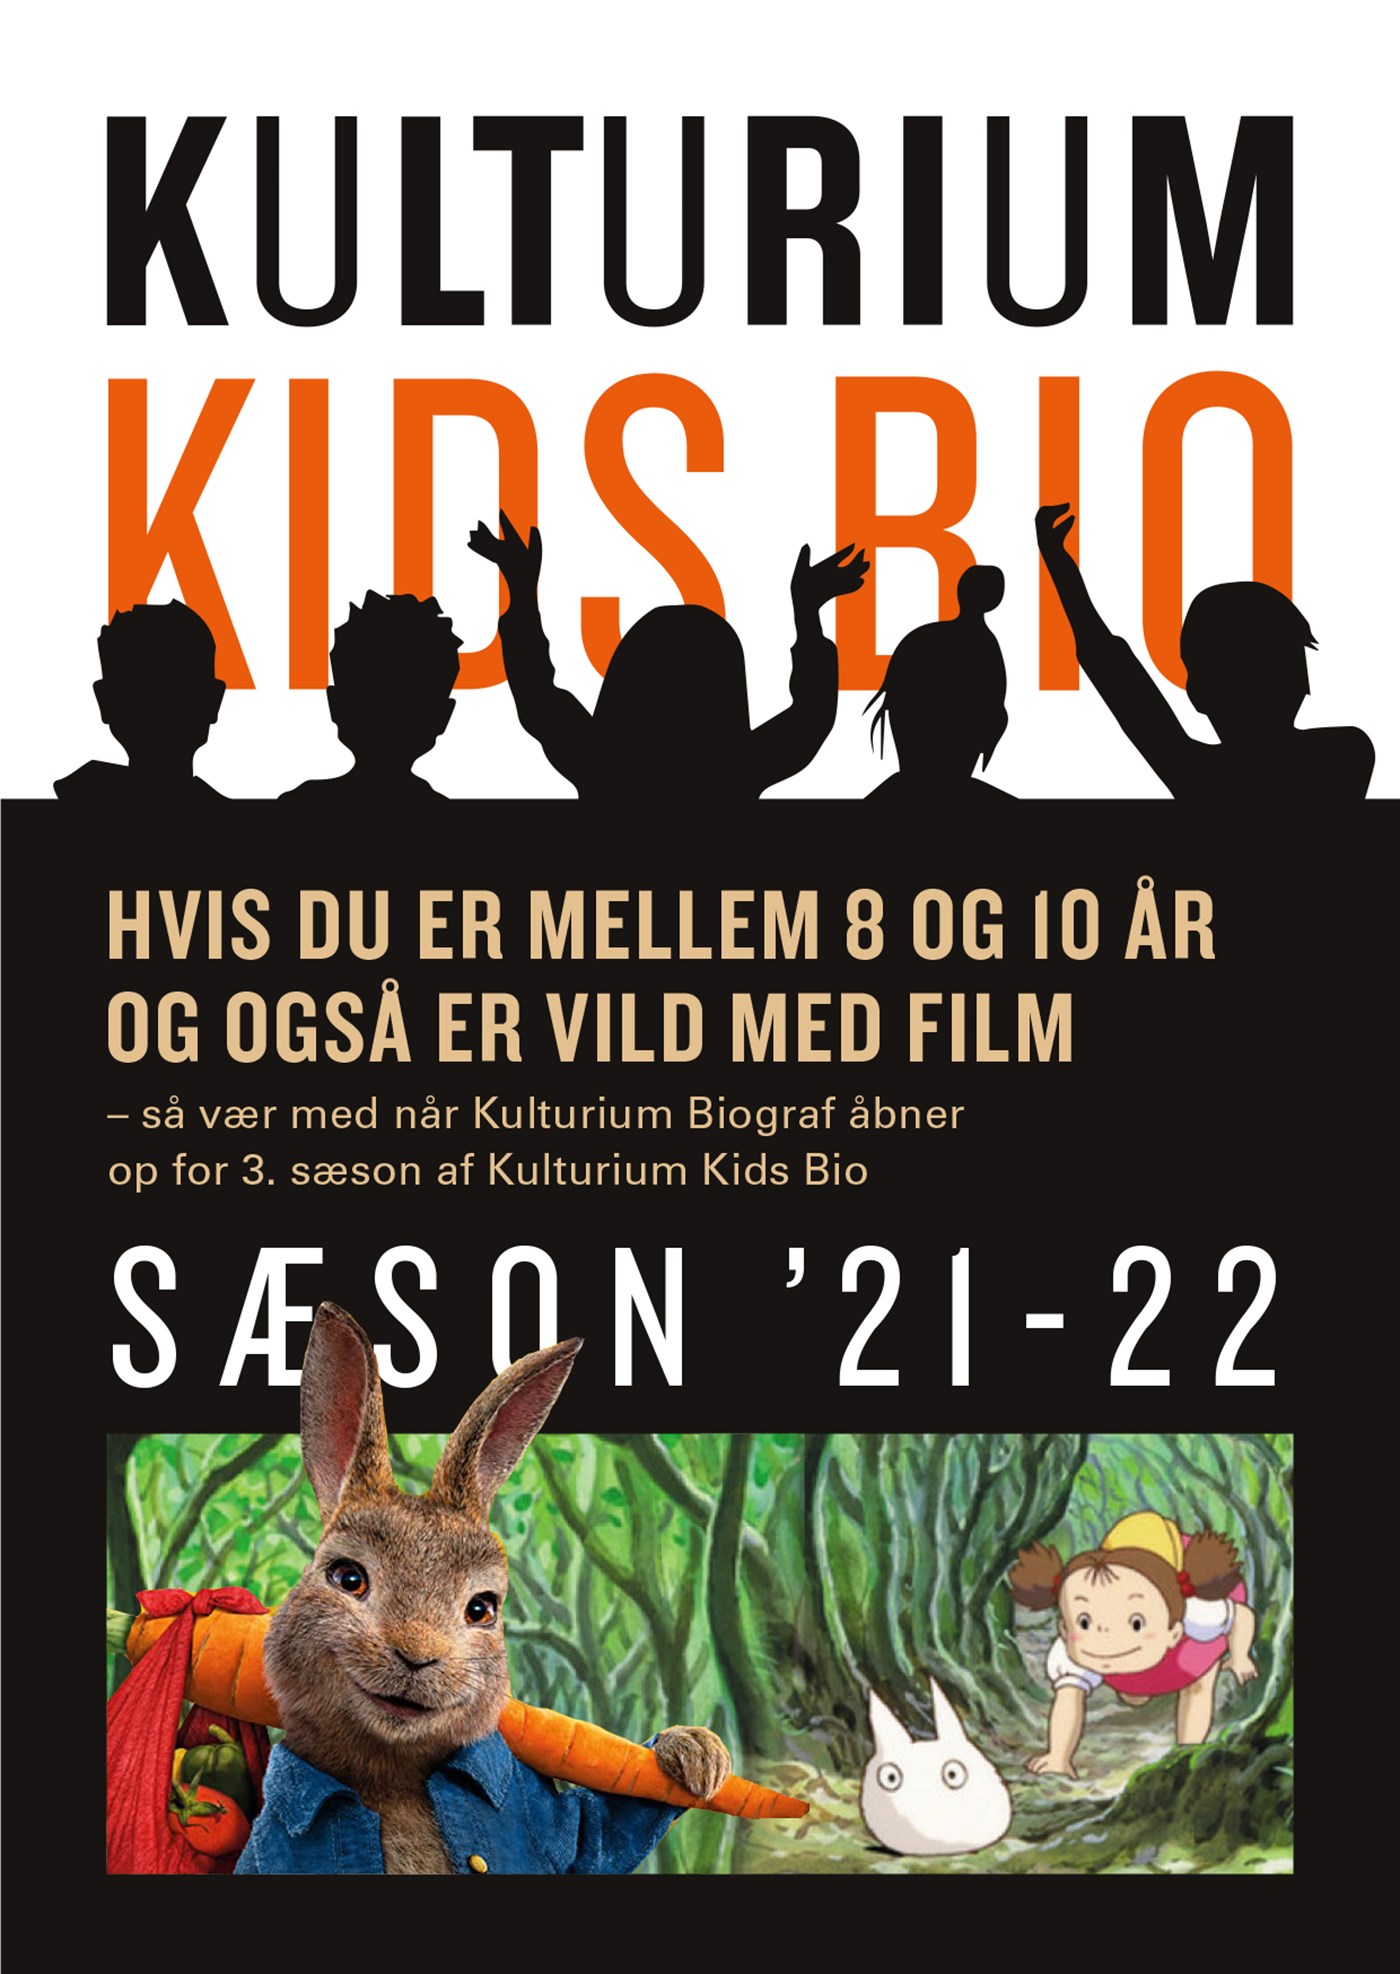 Du kan hente programmet for Kids Bio i Kulturium Biograf